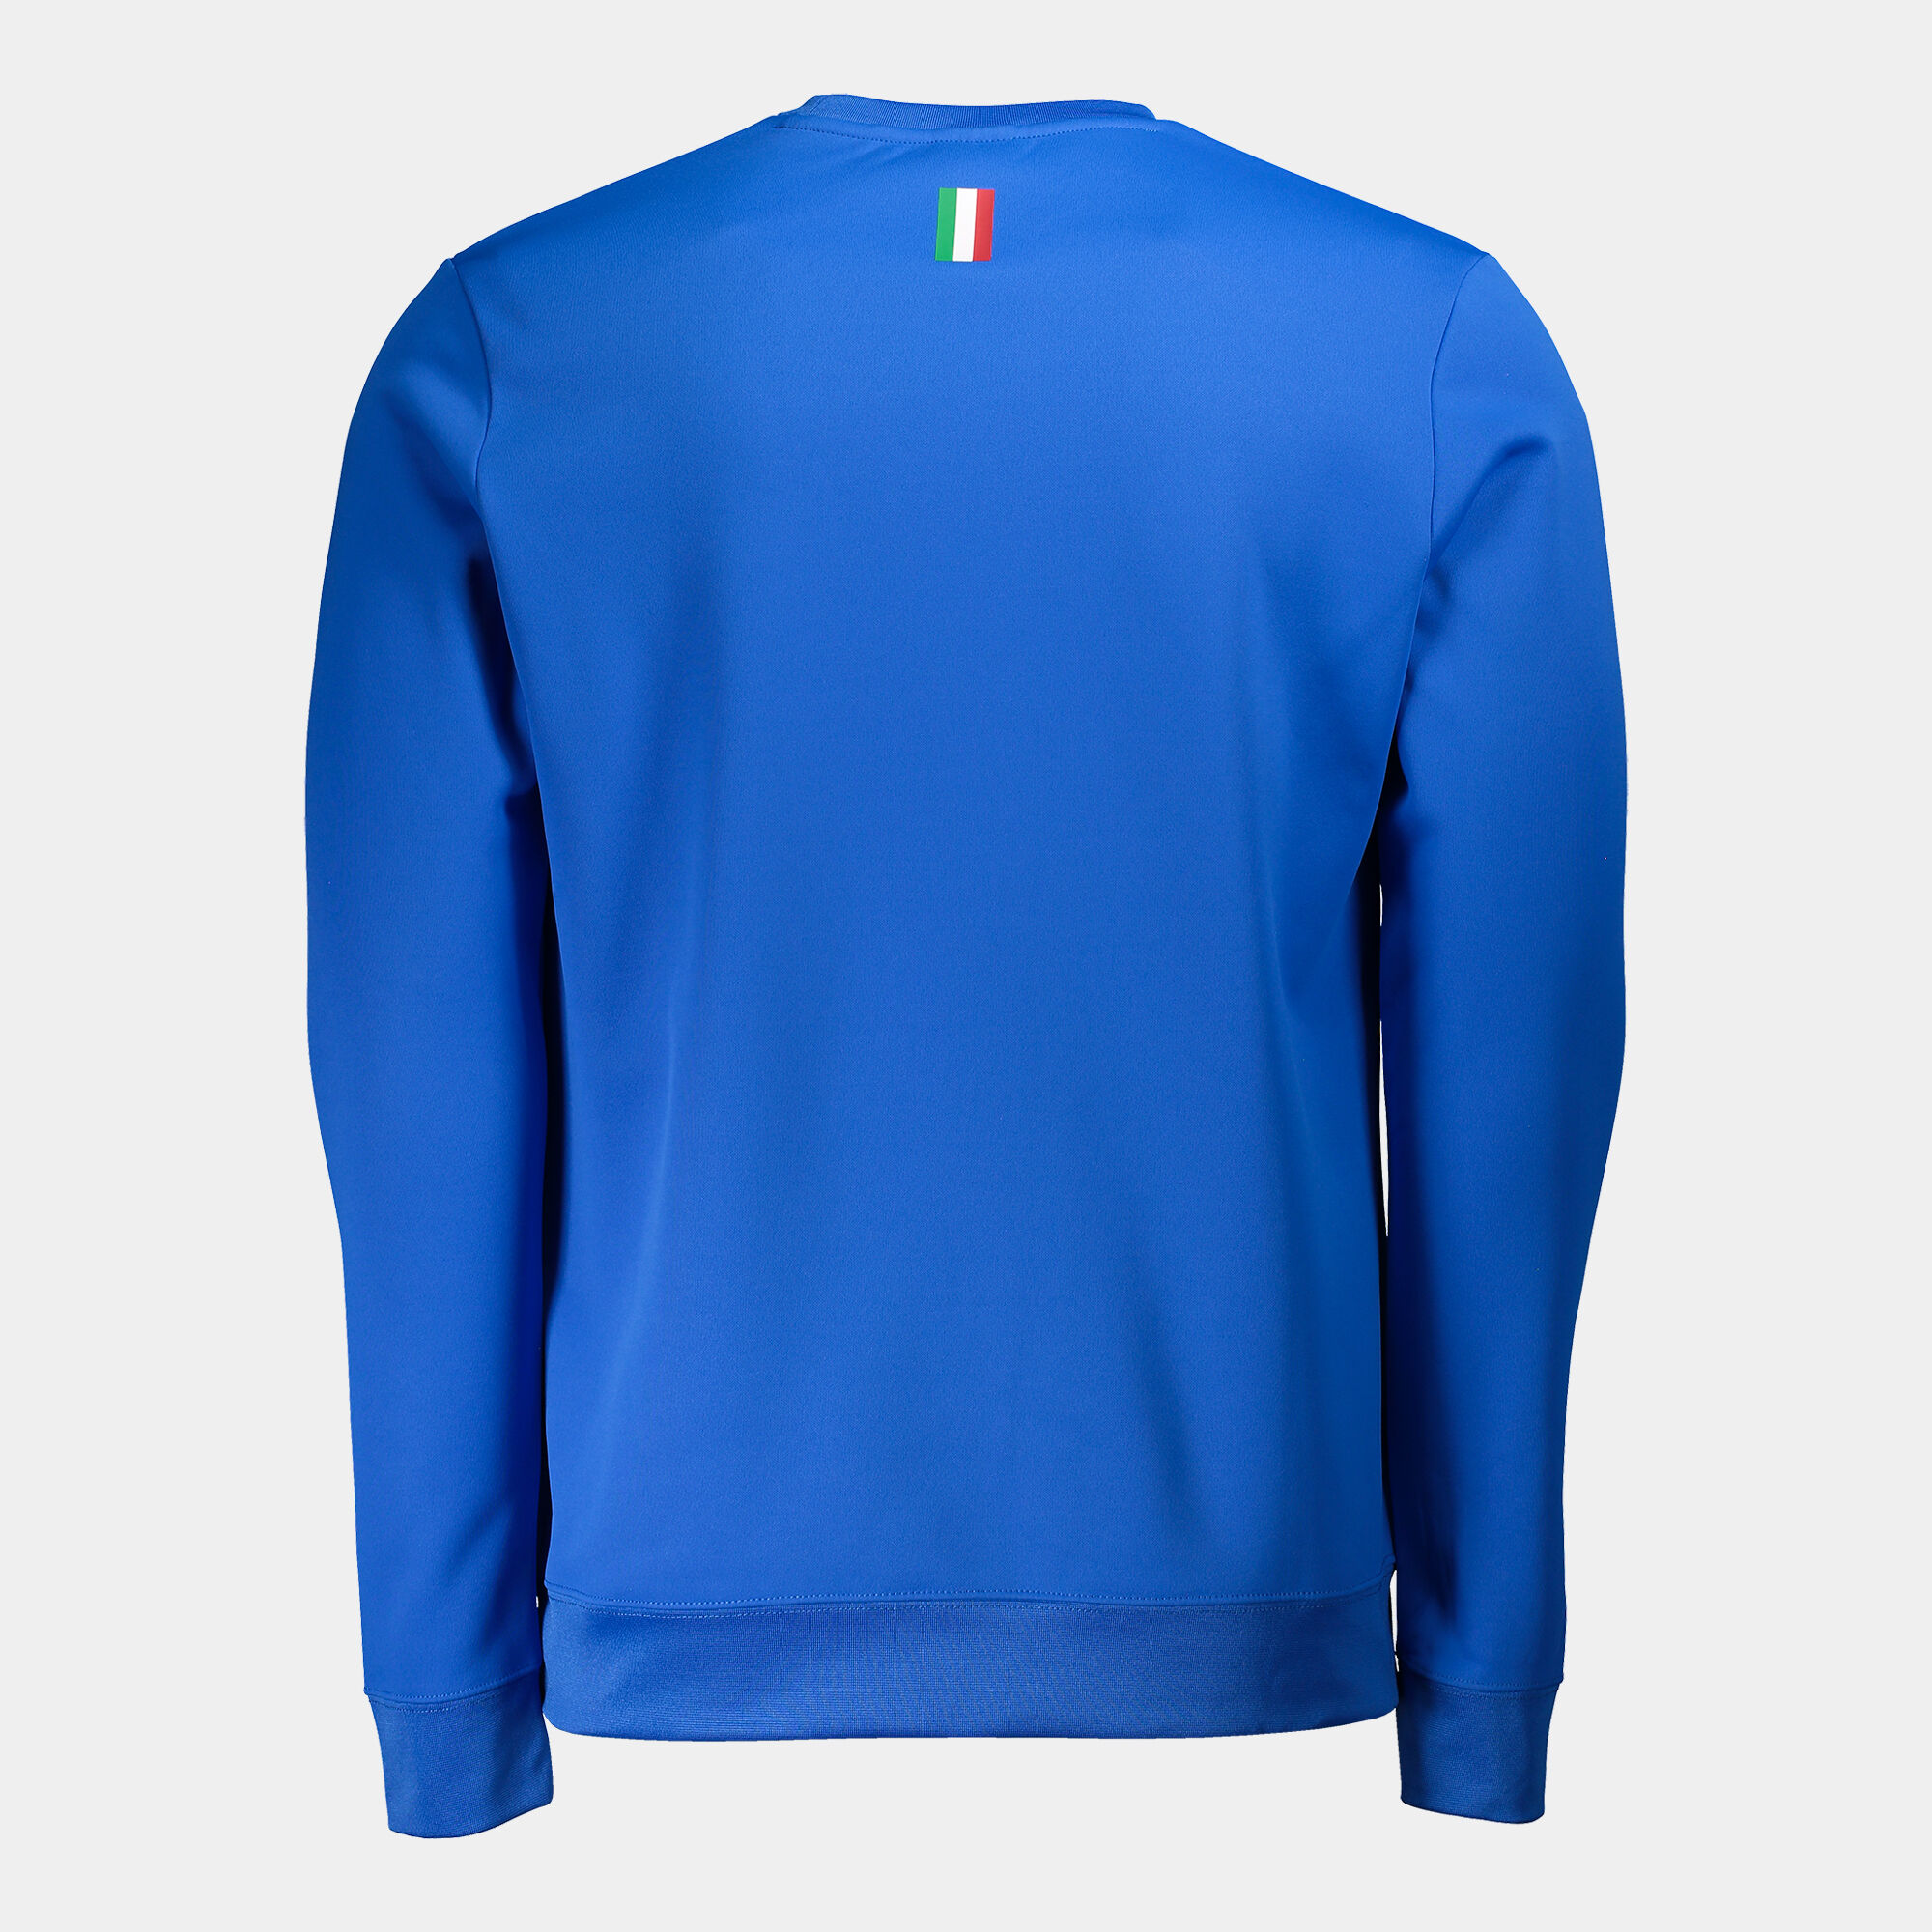 Sweatshirt Italienischer Verband Für Tennis Und Padel